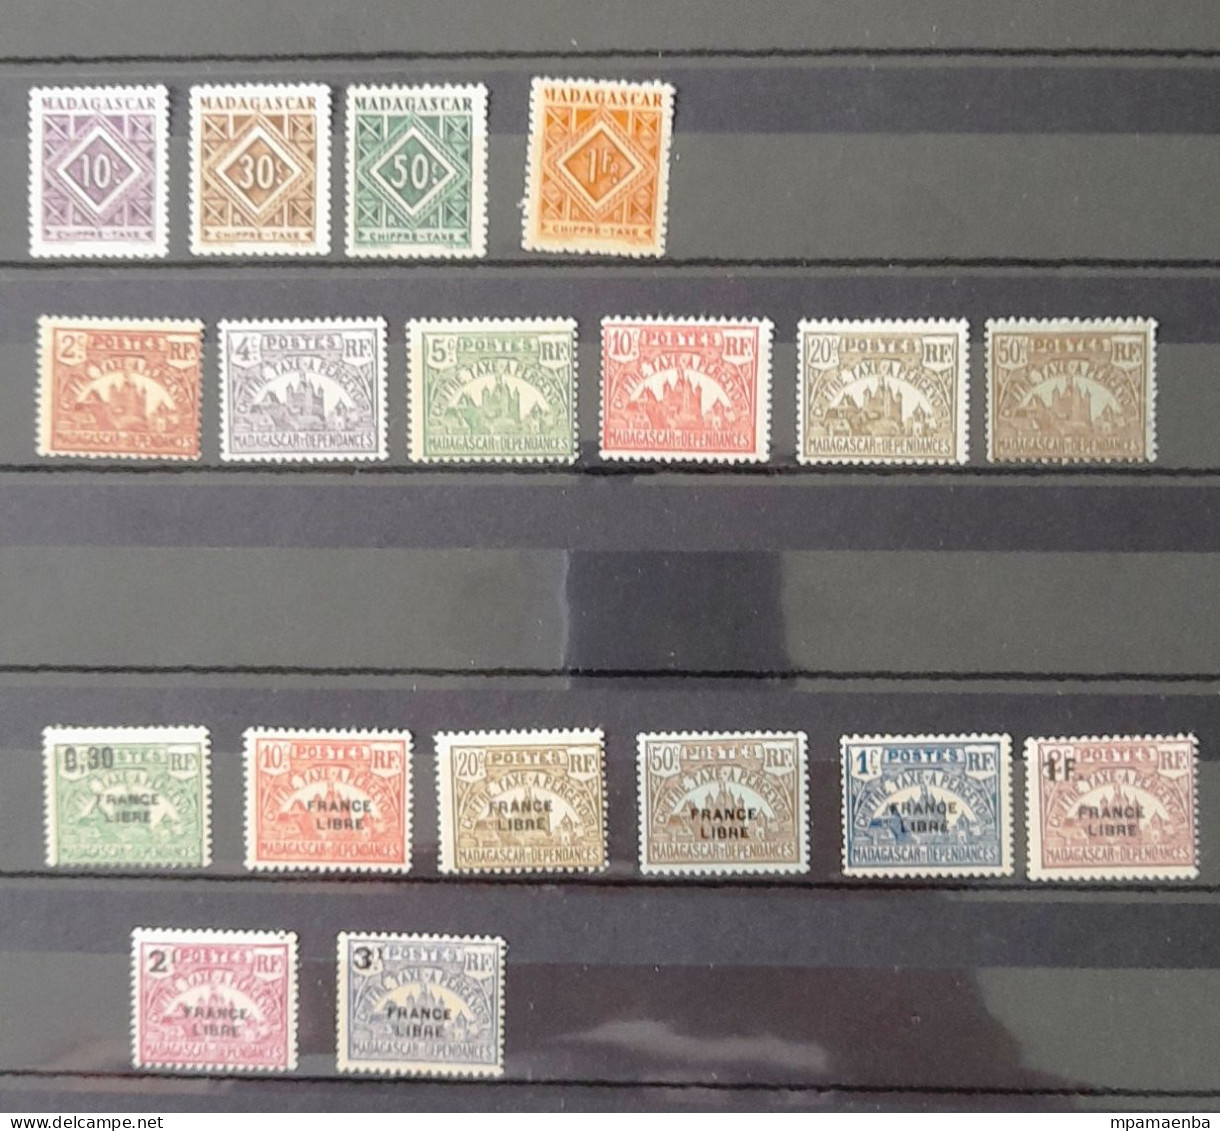 Réunion et Madagascar timbres neufs * * (MNH), une minorité d'oblitérés.